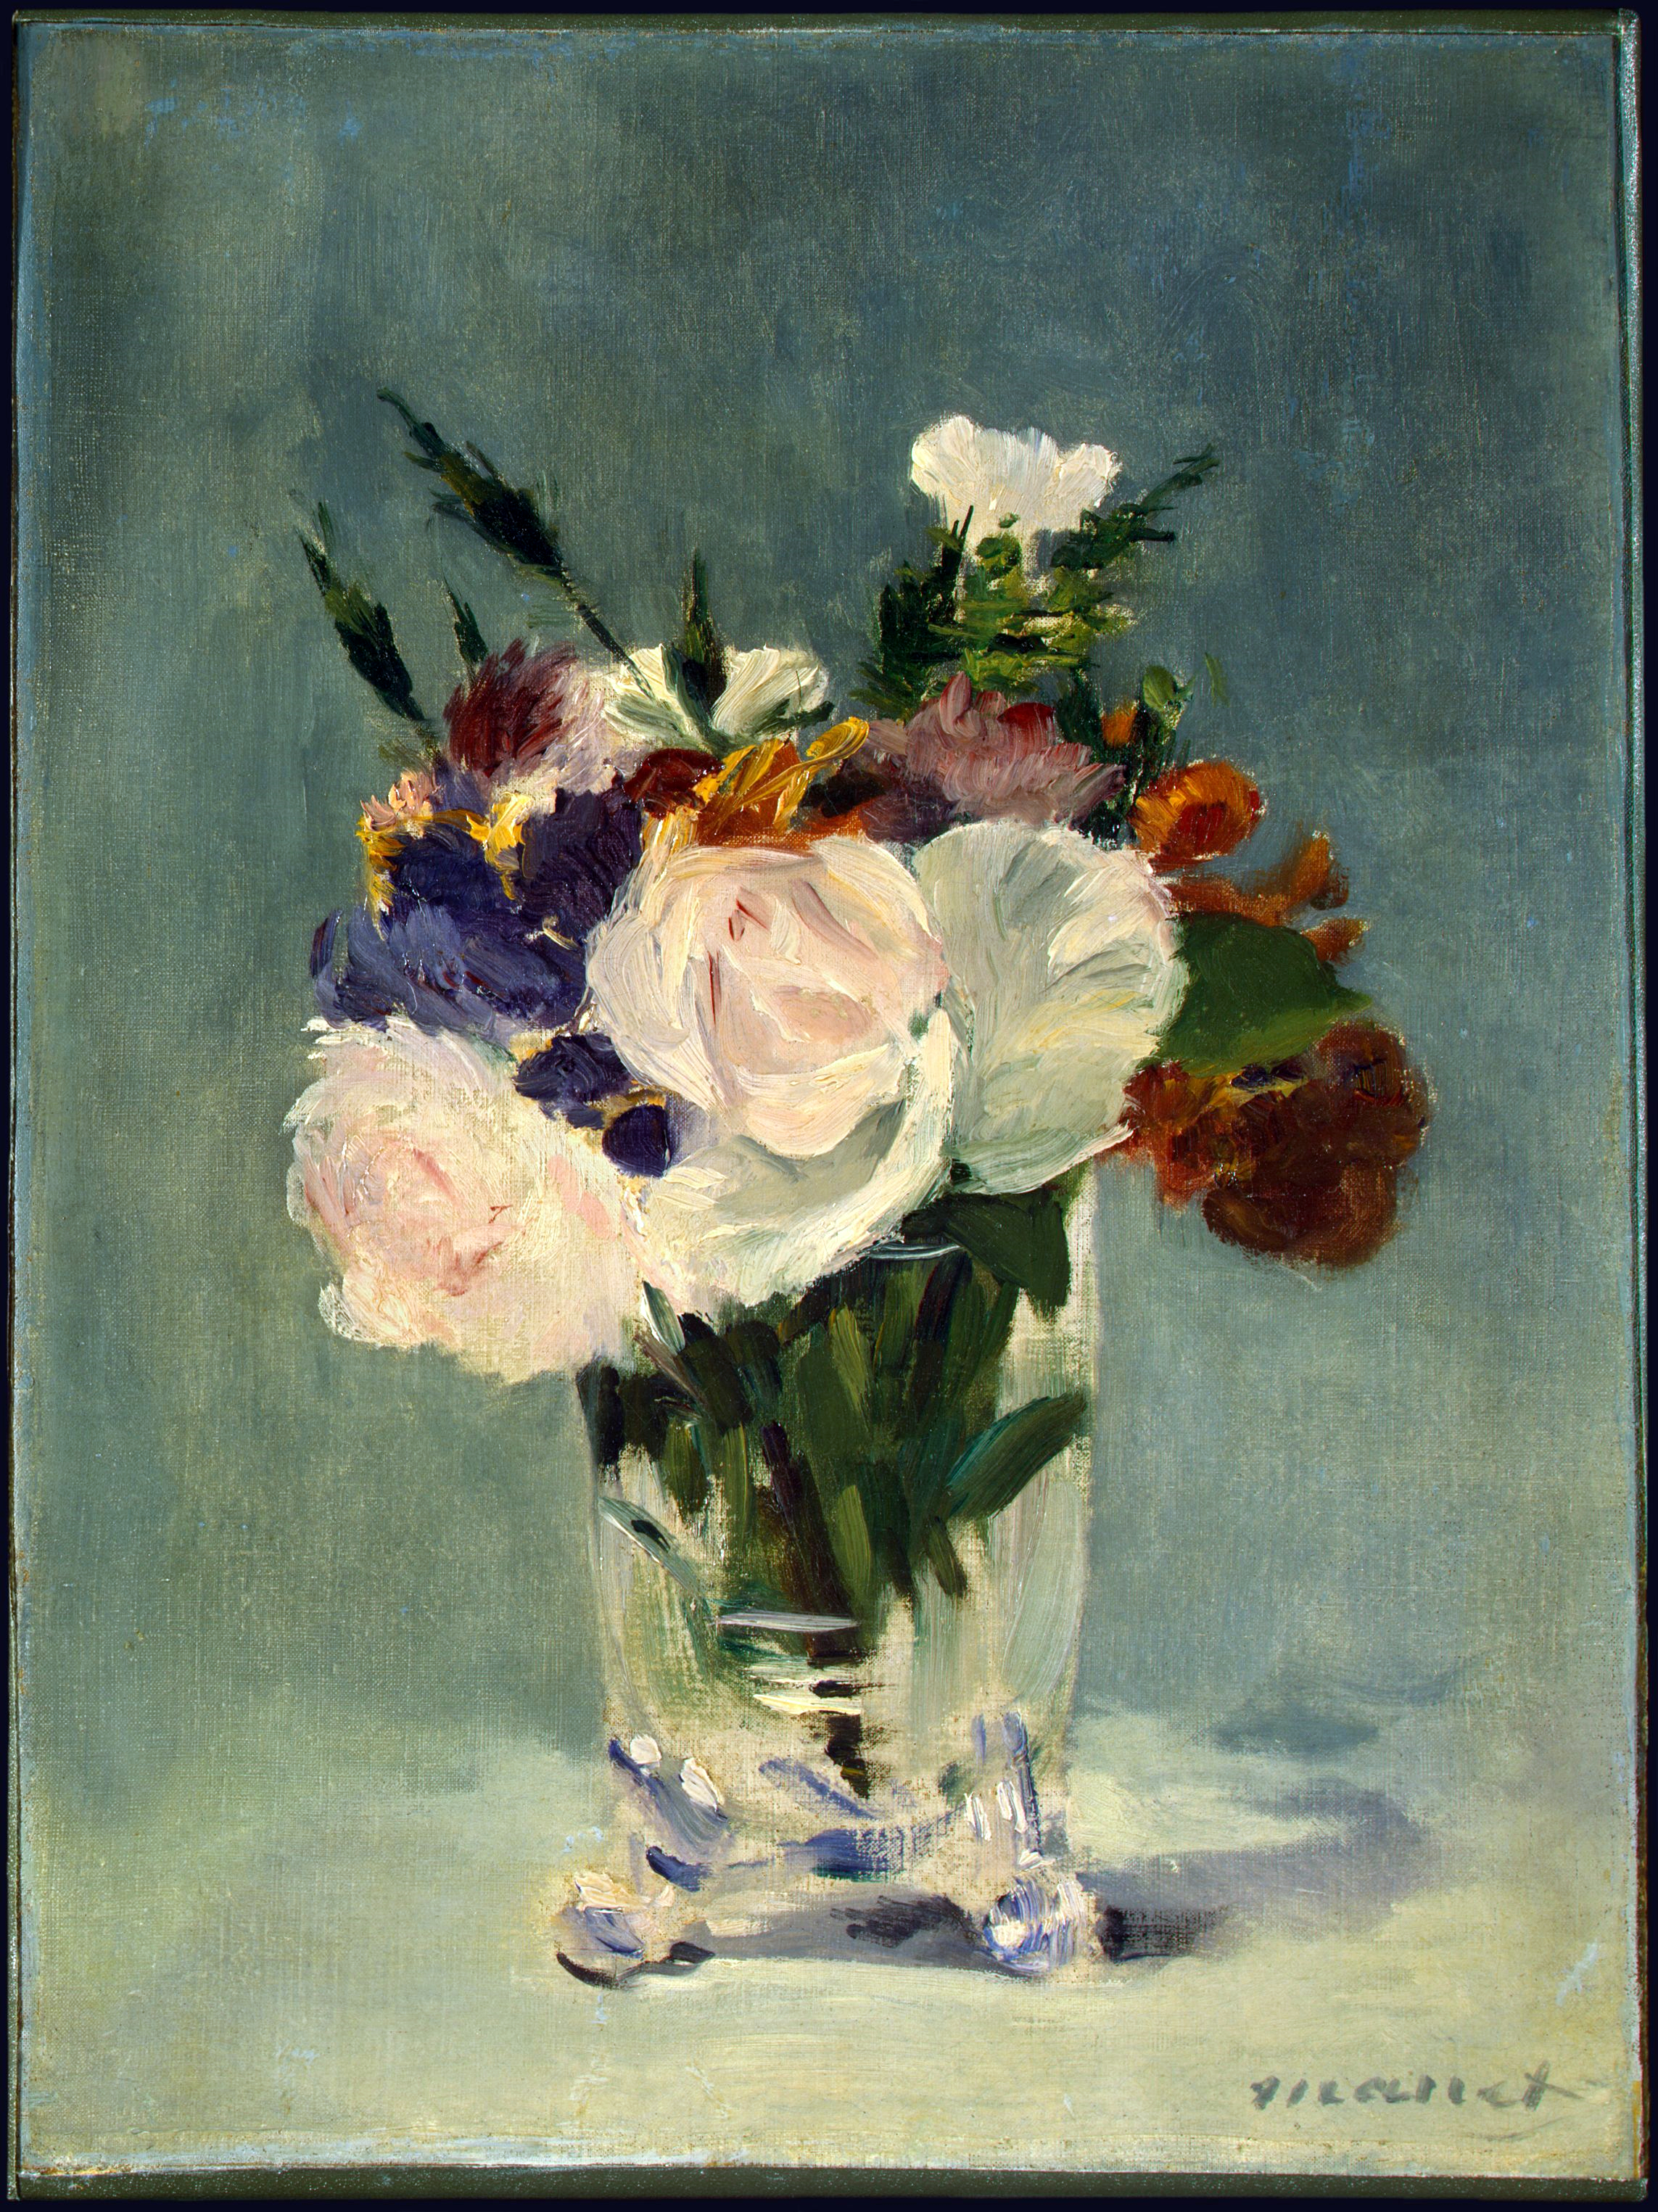 Blumen in einer Kristallvase by Édouard Manet - ca. 1882 - 32.7 × 24.5 cm National Gallery of Art